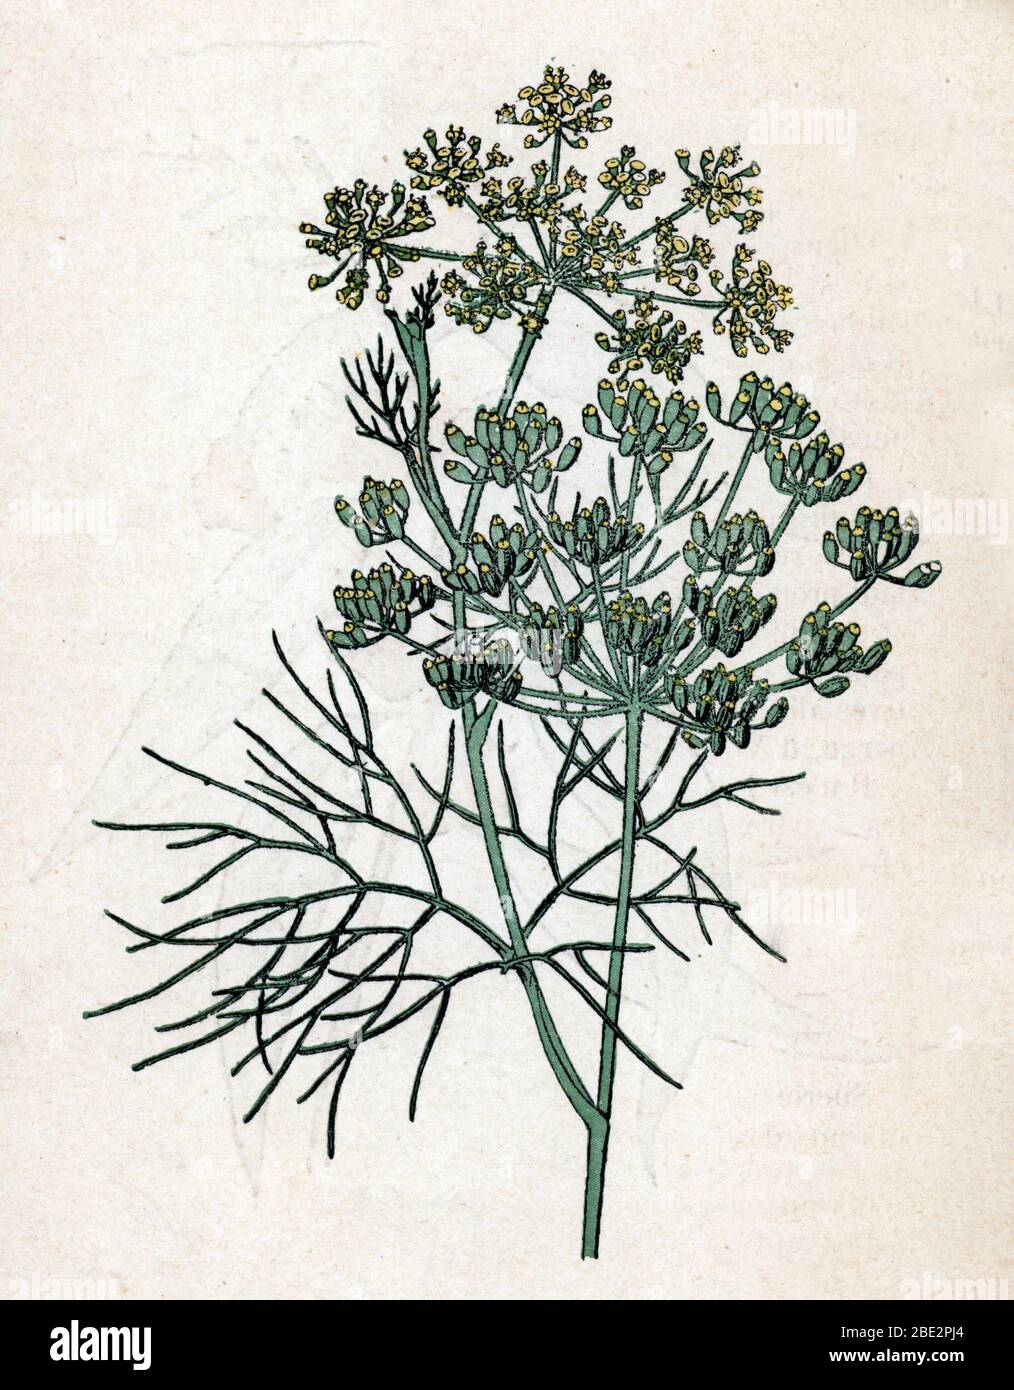 'Fenouil commun' (Foeniculum vulgare) (fennel) Planche de botanique tiree de 'Atlas colorie des plantes medicinales' de Paul Hariot, 1900 (Botanical p Stock Photo